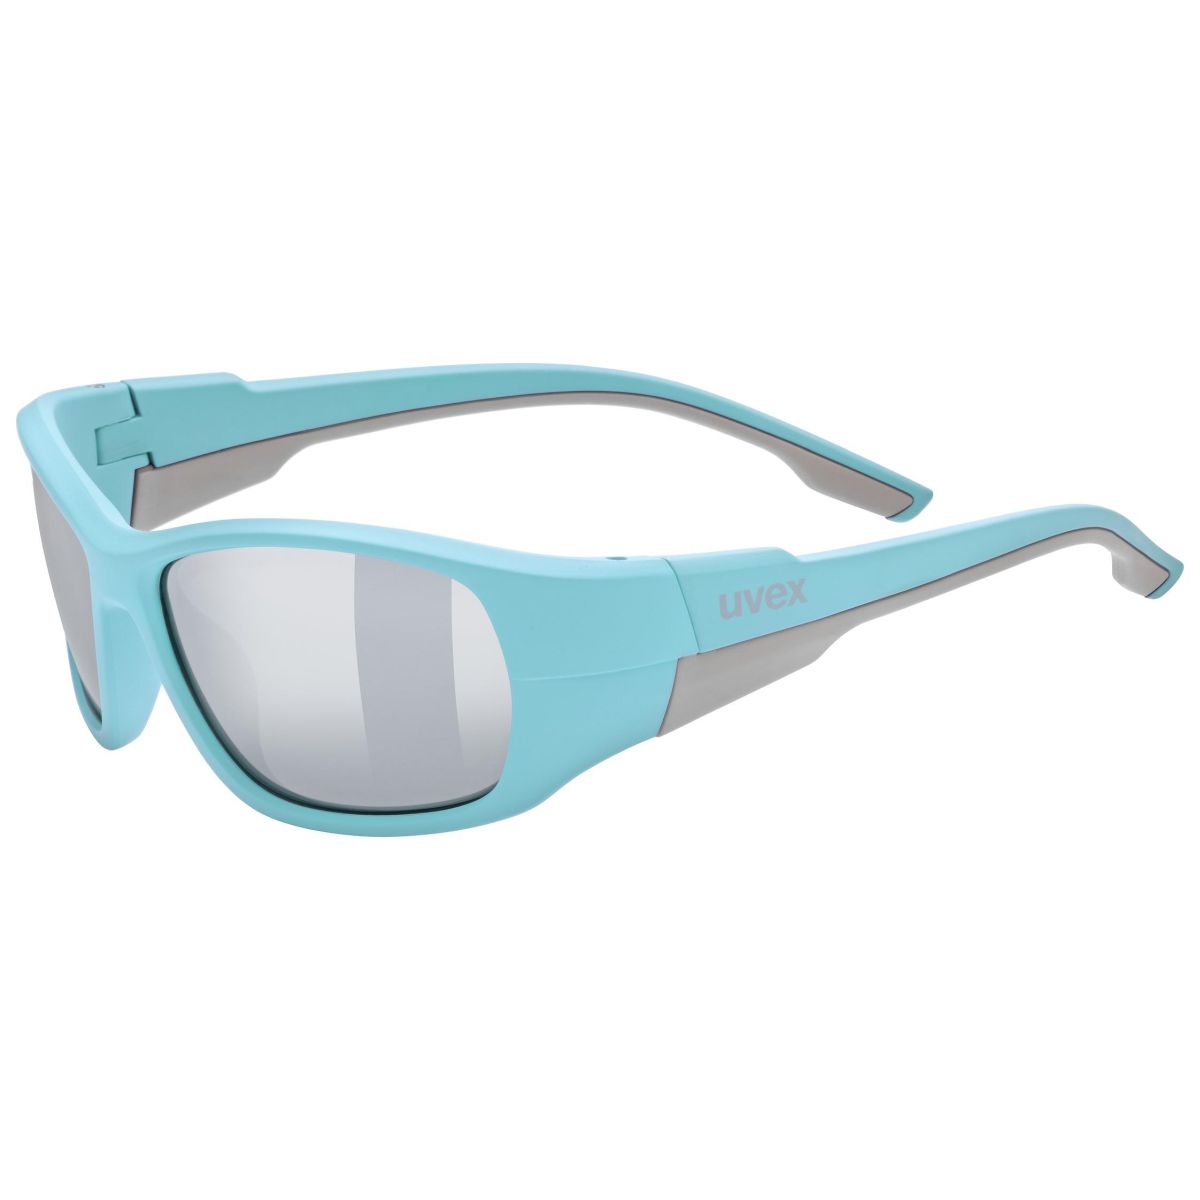 Produktbild von Uvex sportstyle 514 Kinderbrille - lightblue matt/mirror silver